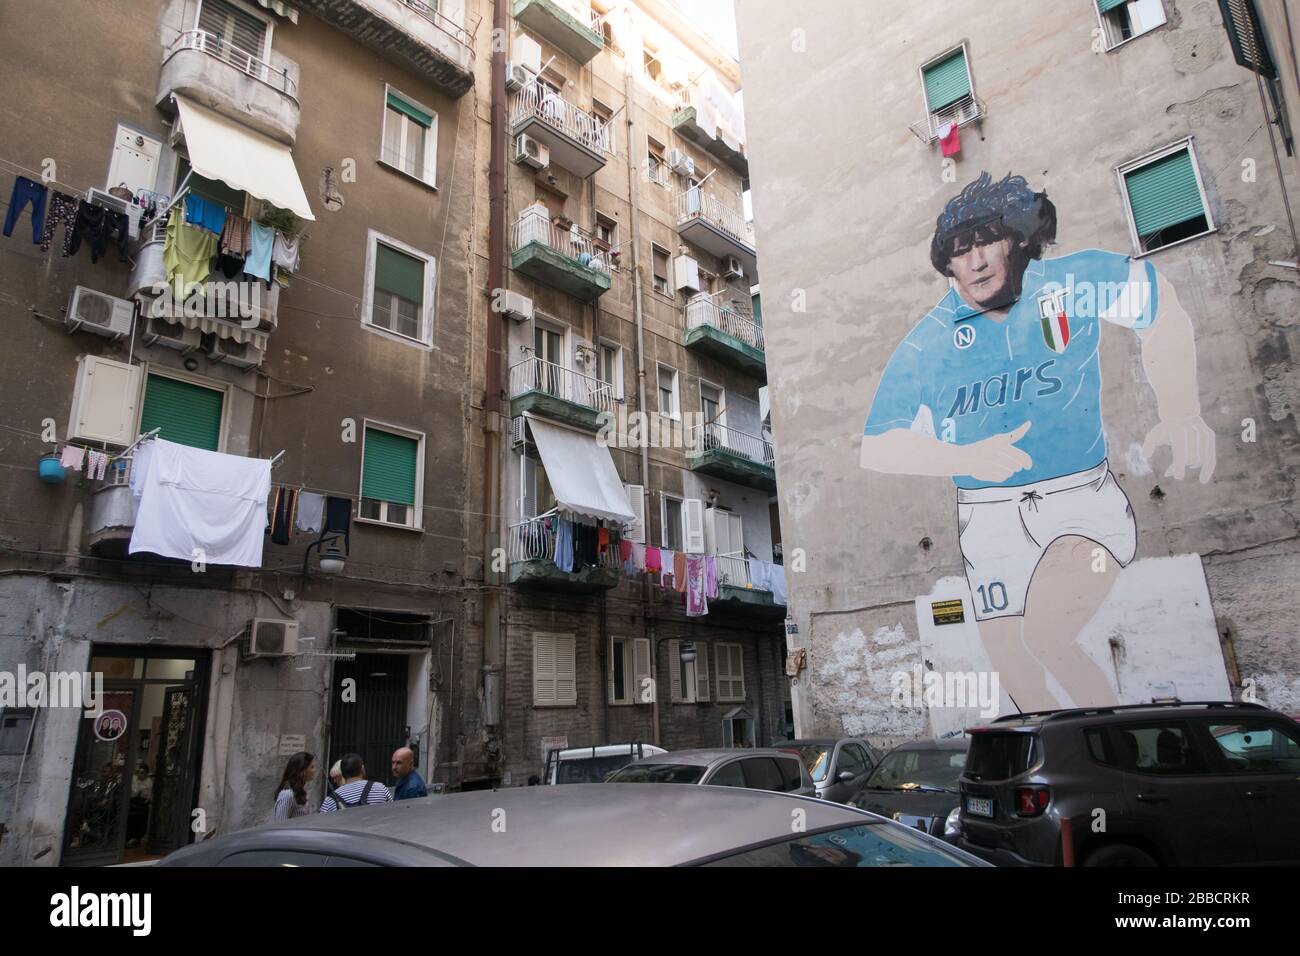 Un grande murale di Diego Armando Maradona progettato sul lato di un edificio nel quartiere spagnolo di Napoli, Italia. Foto Stock